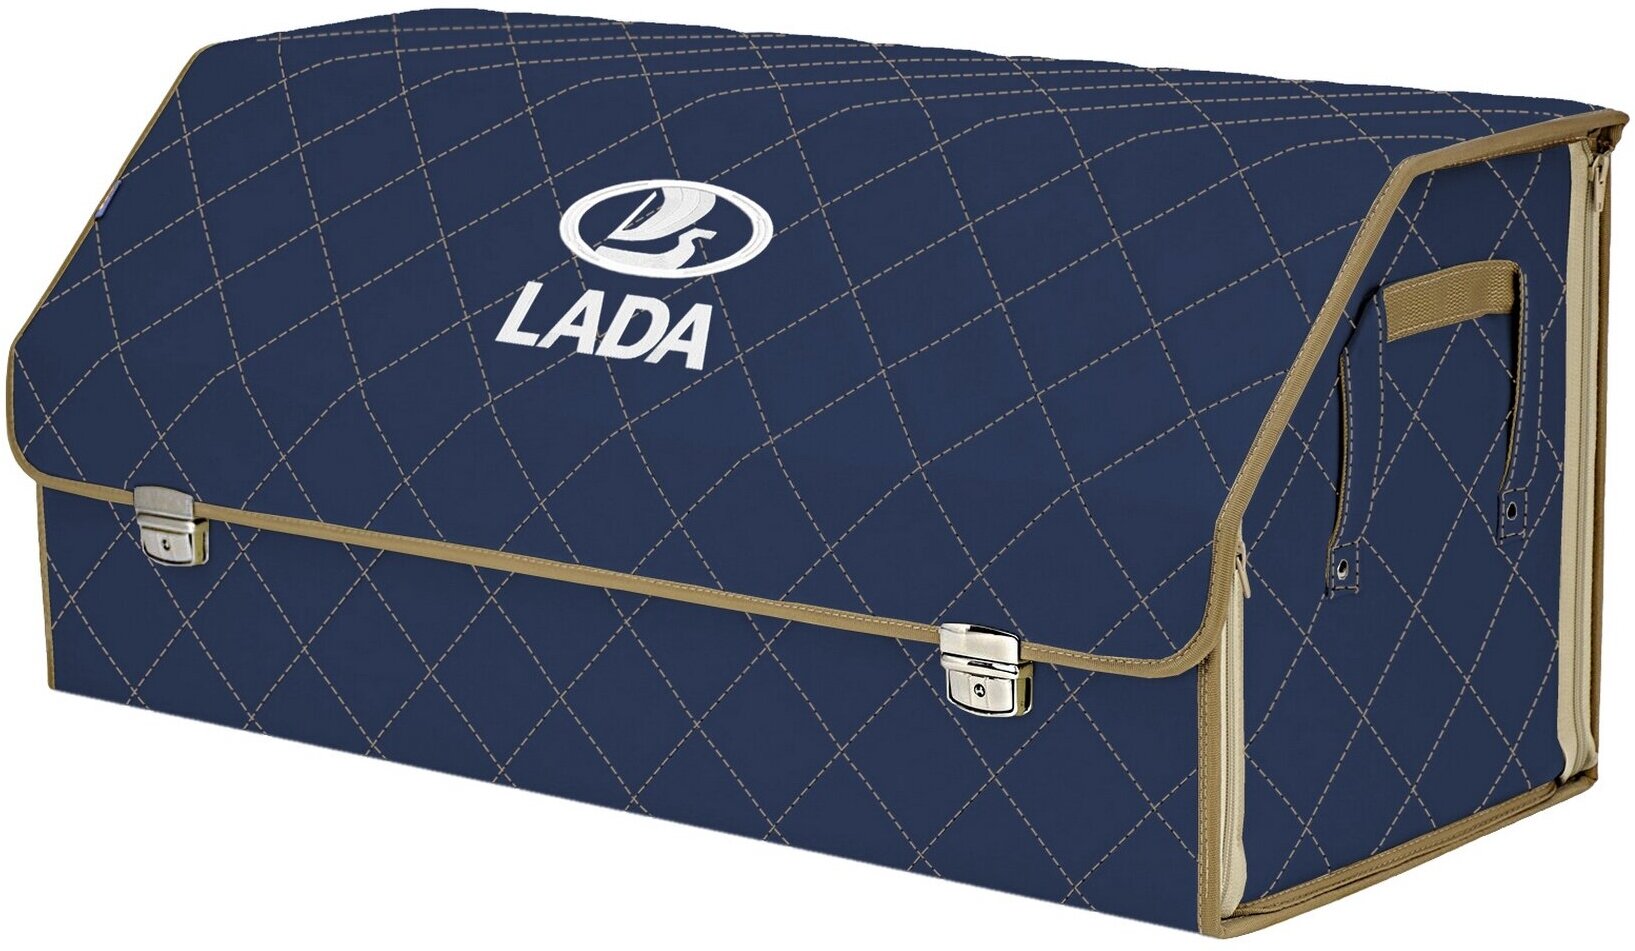 Органайзер-саквояж в багажник "Союз Премиум" (размер XXL). Цвет: синий с бежевой прострочкой Ромб и вышивкой LADA (лада).